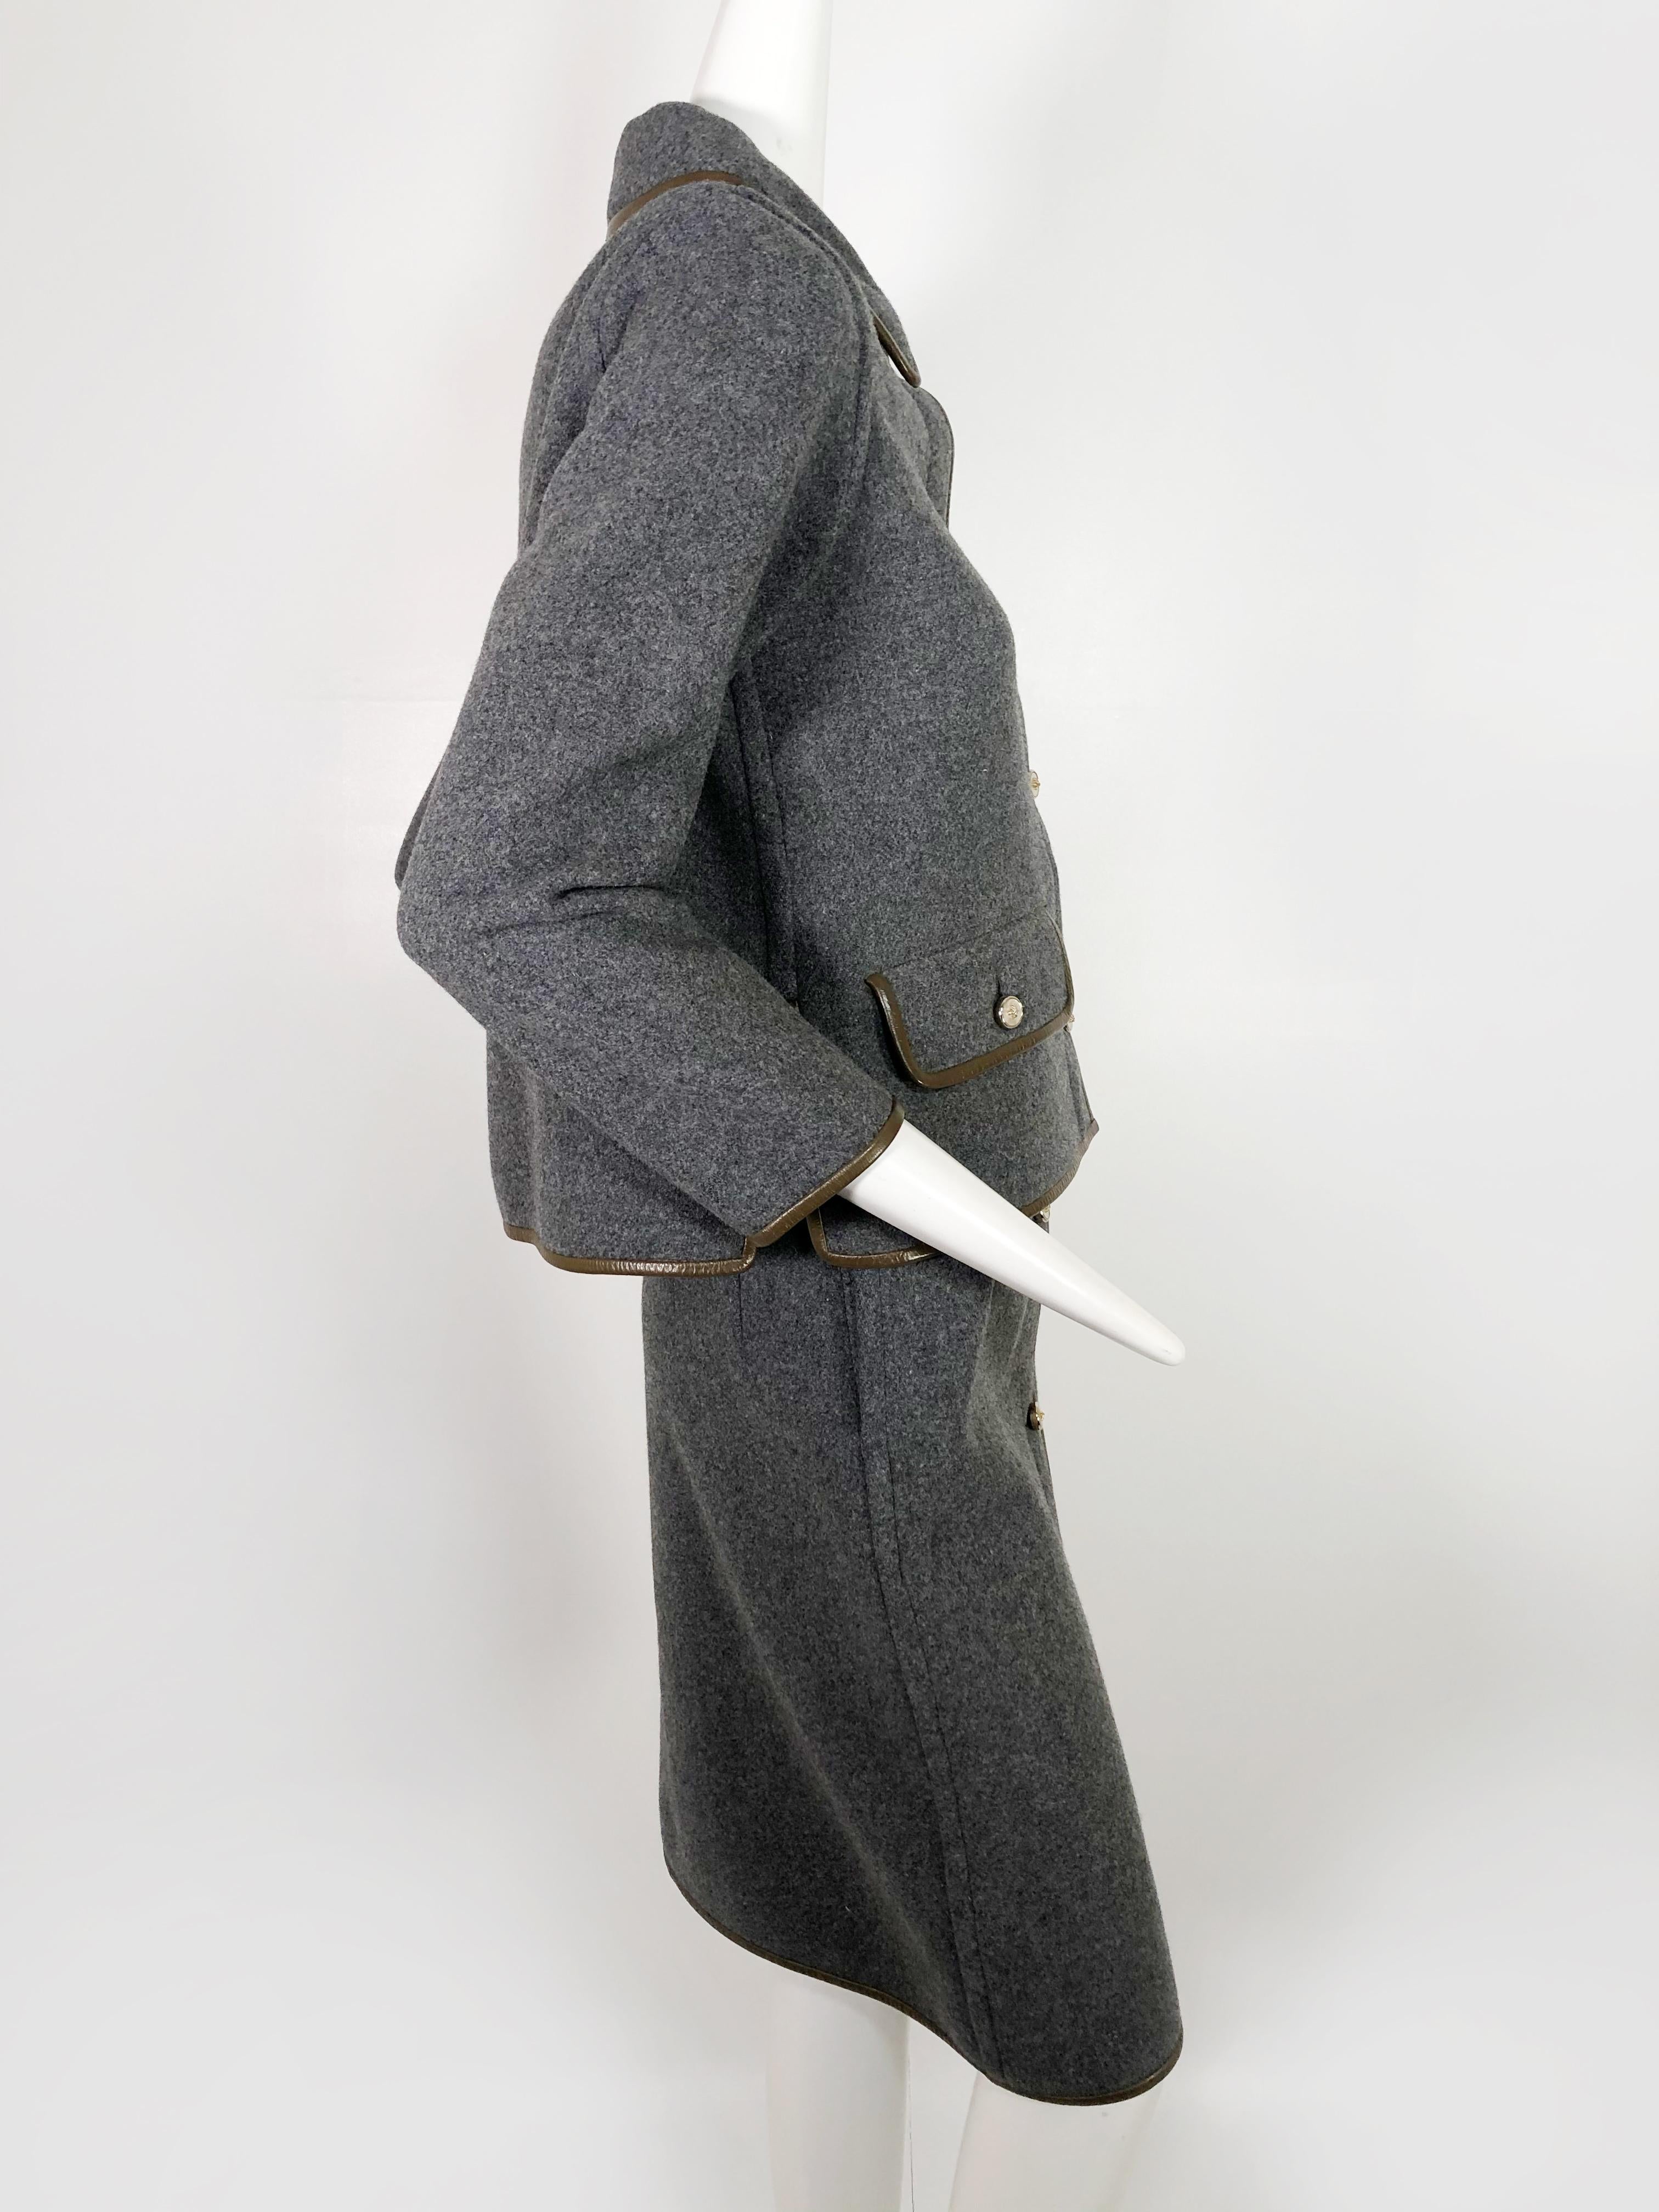 Tailleur jupe en laine grise avec bordure en cuir marron Sills by Bonnie Cashin, années 1960 Pour femmes en vente